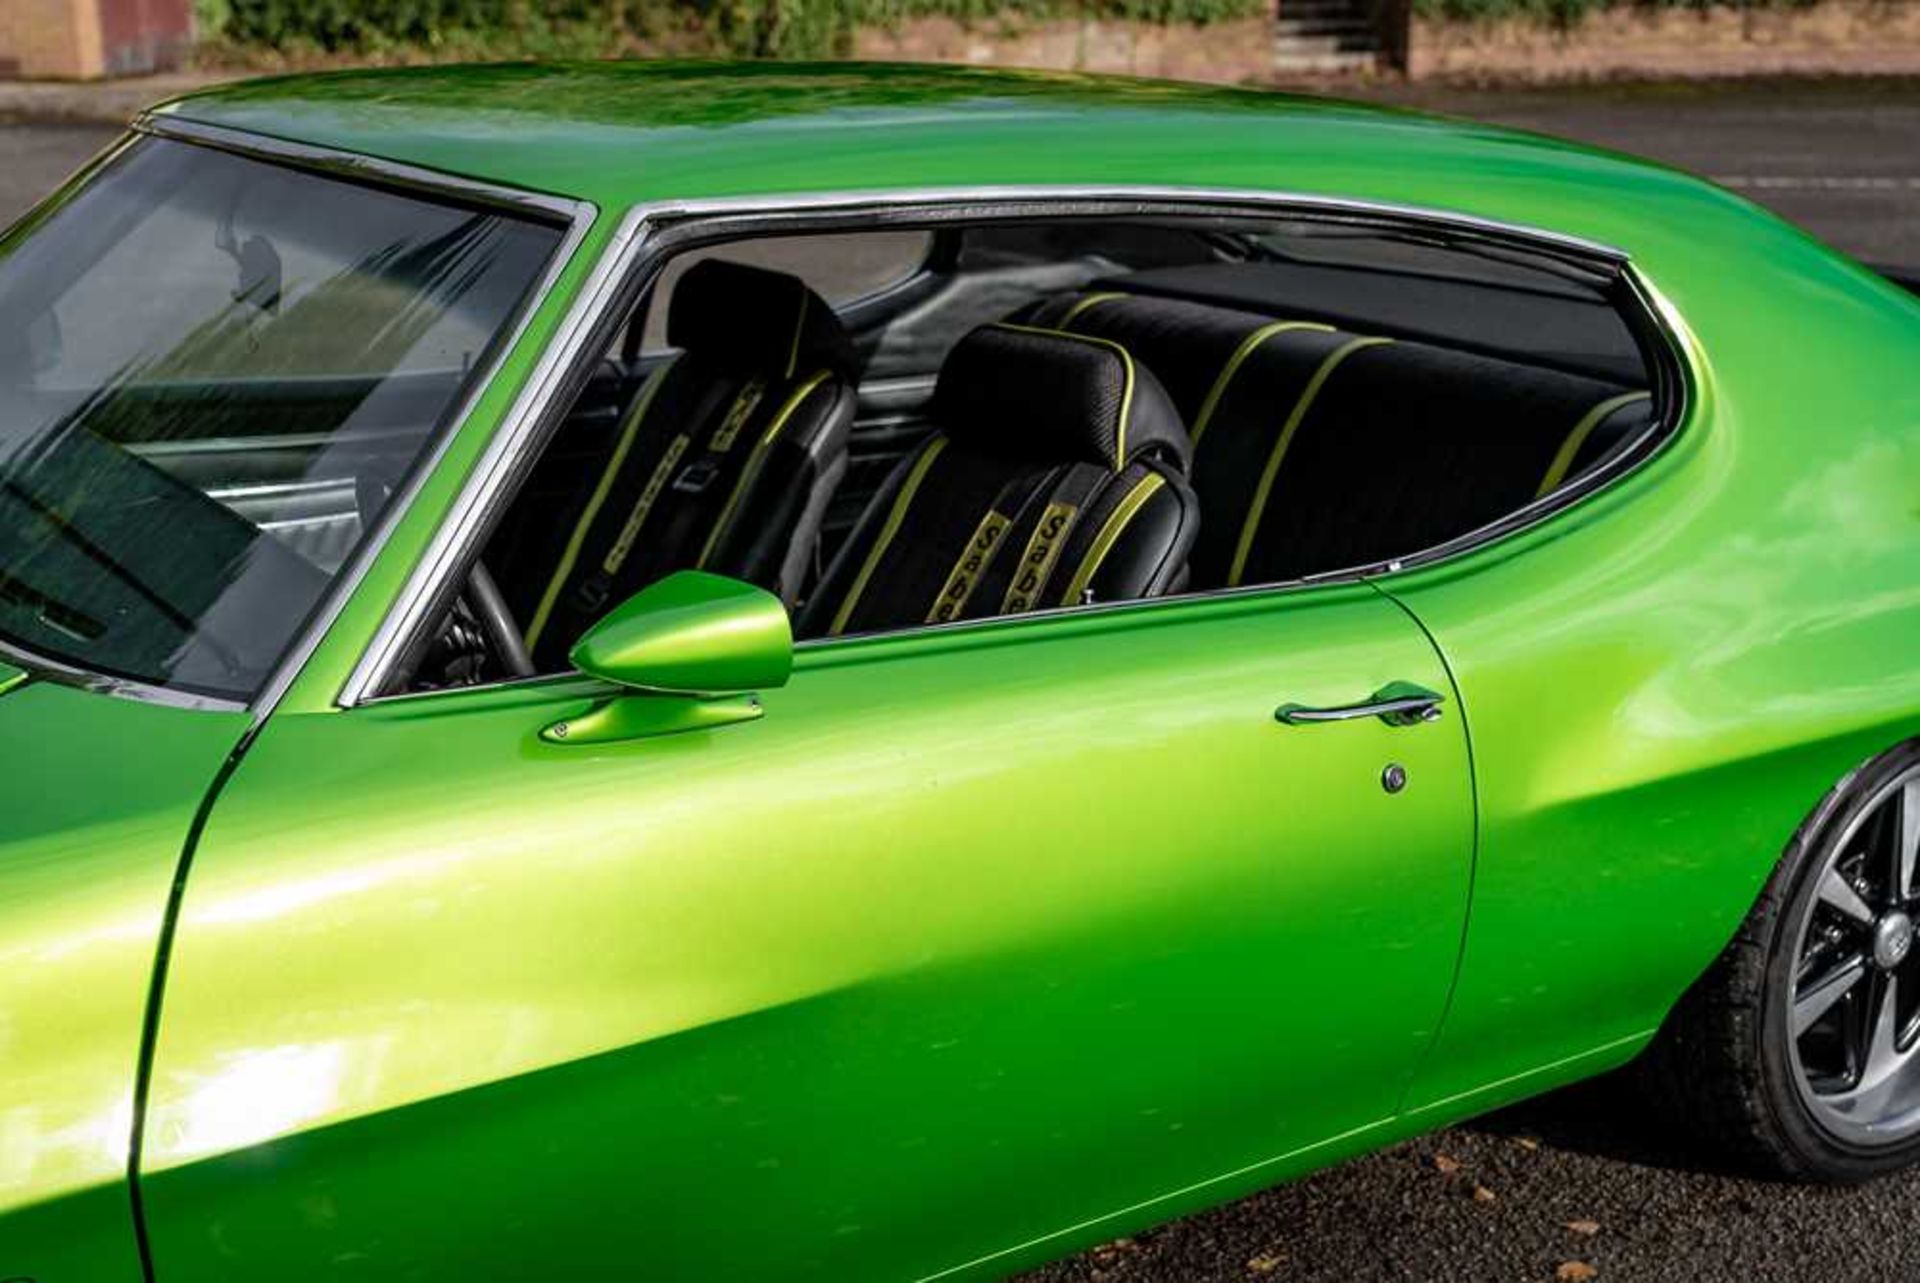 1970 Pontiac GTO - Image 65 of 67